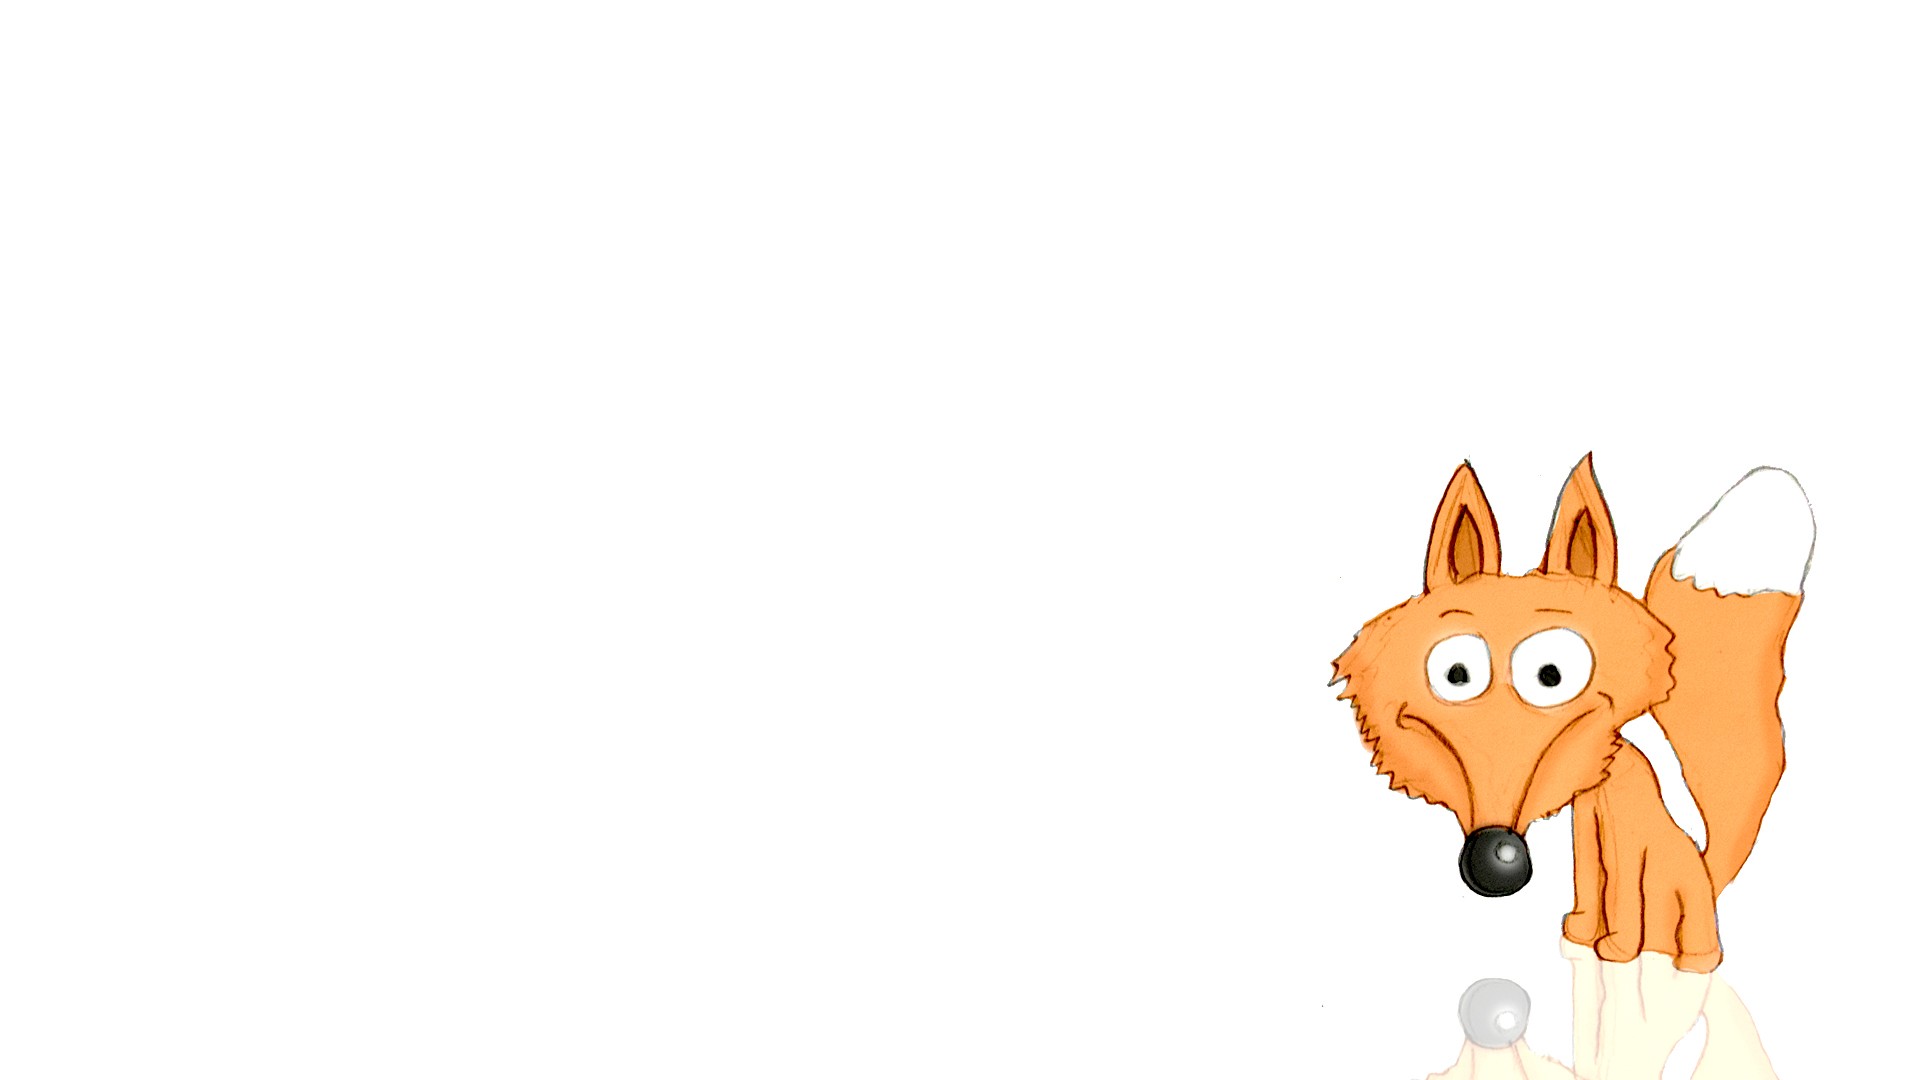 General 1920x1080 fox cartoon simple background animals white background mammals artwork